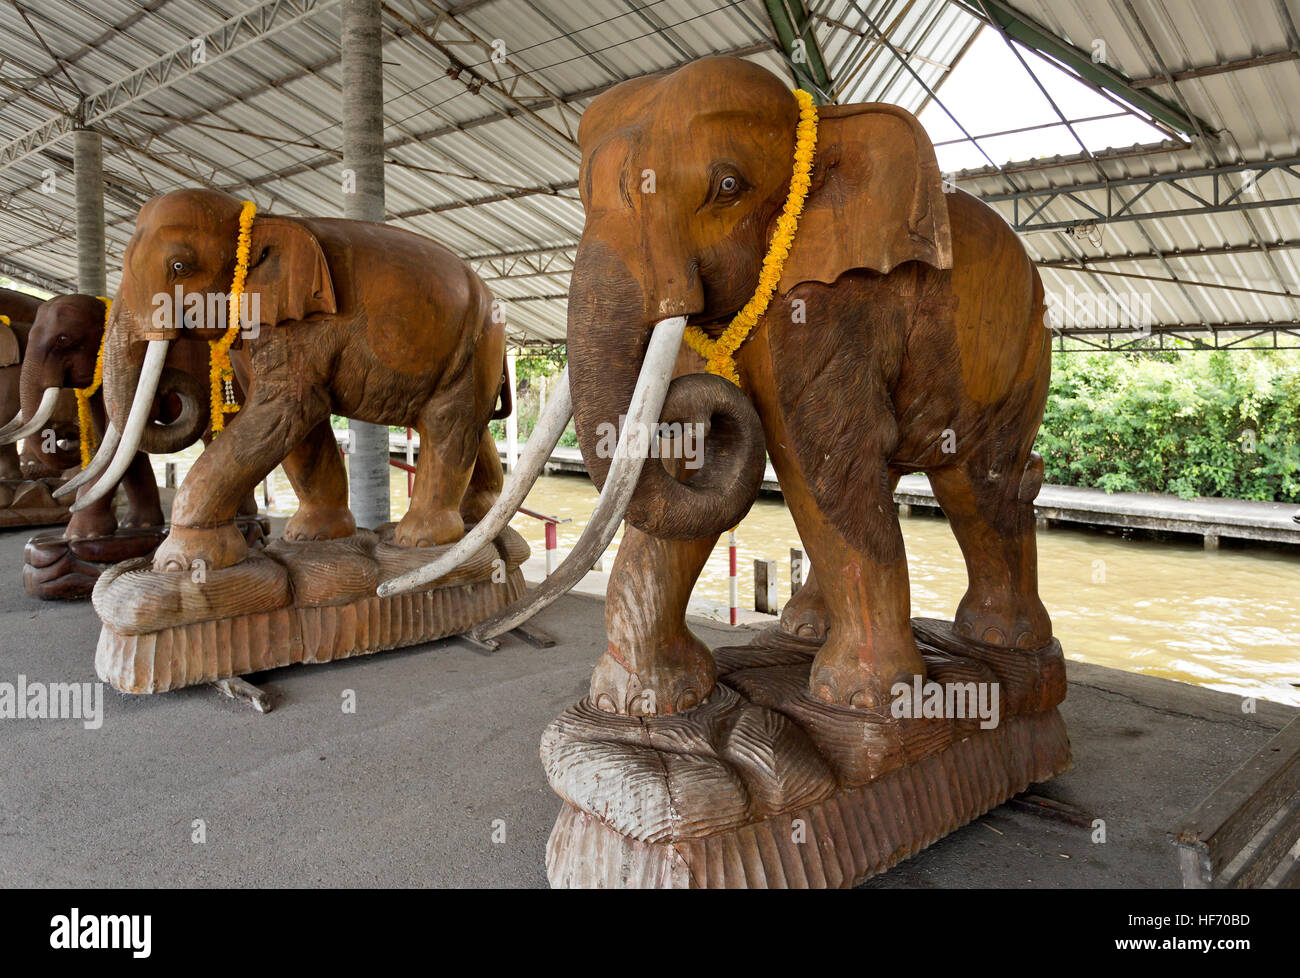 Statues en céramique pleine grandeur éléphants sur un terminal de croisière de fleuve près de la marchés flottants de Bangkok, Thaïlande Banque D'Images